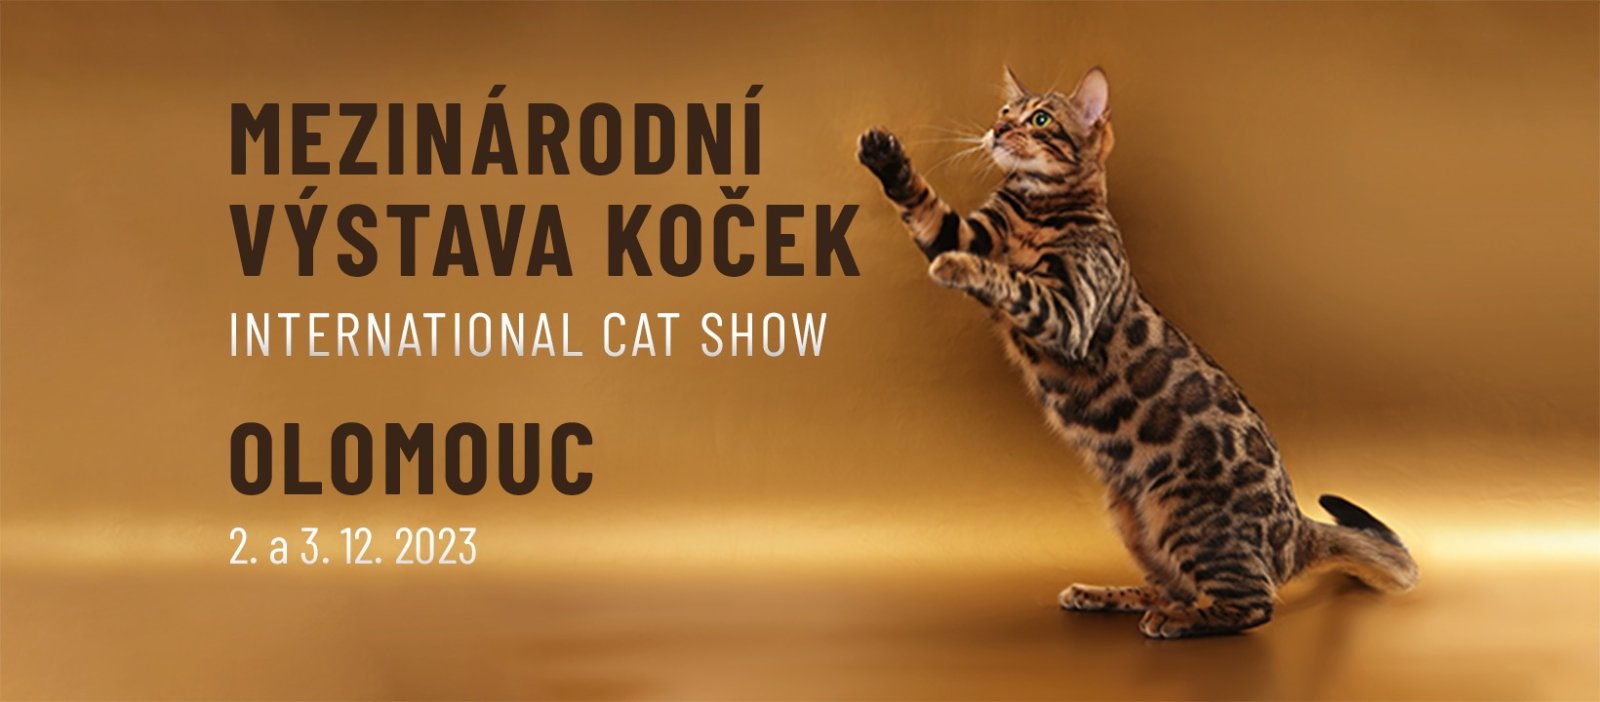 Mezinárodní výstava koček Olomouc